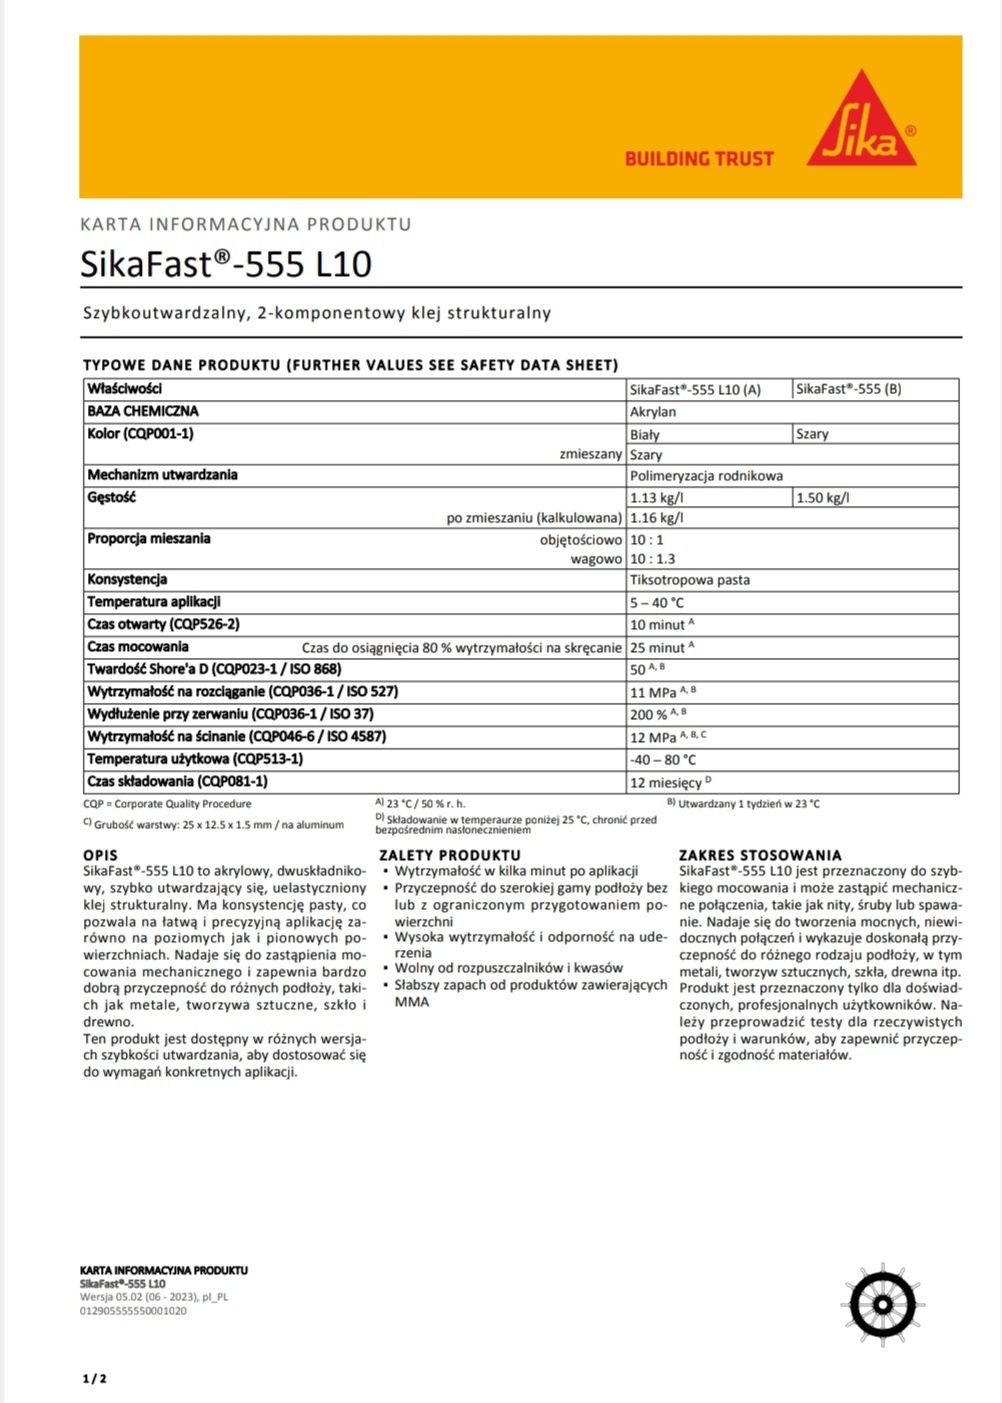 Klej strukturalny SikaFast 555 L10 akrylowy, dwuskładnikowy 250ml